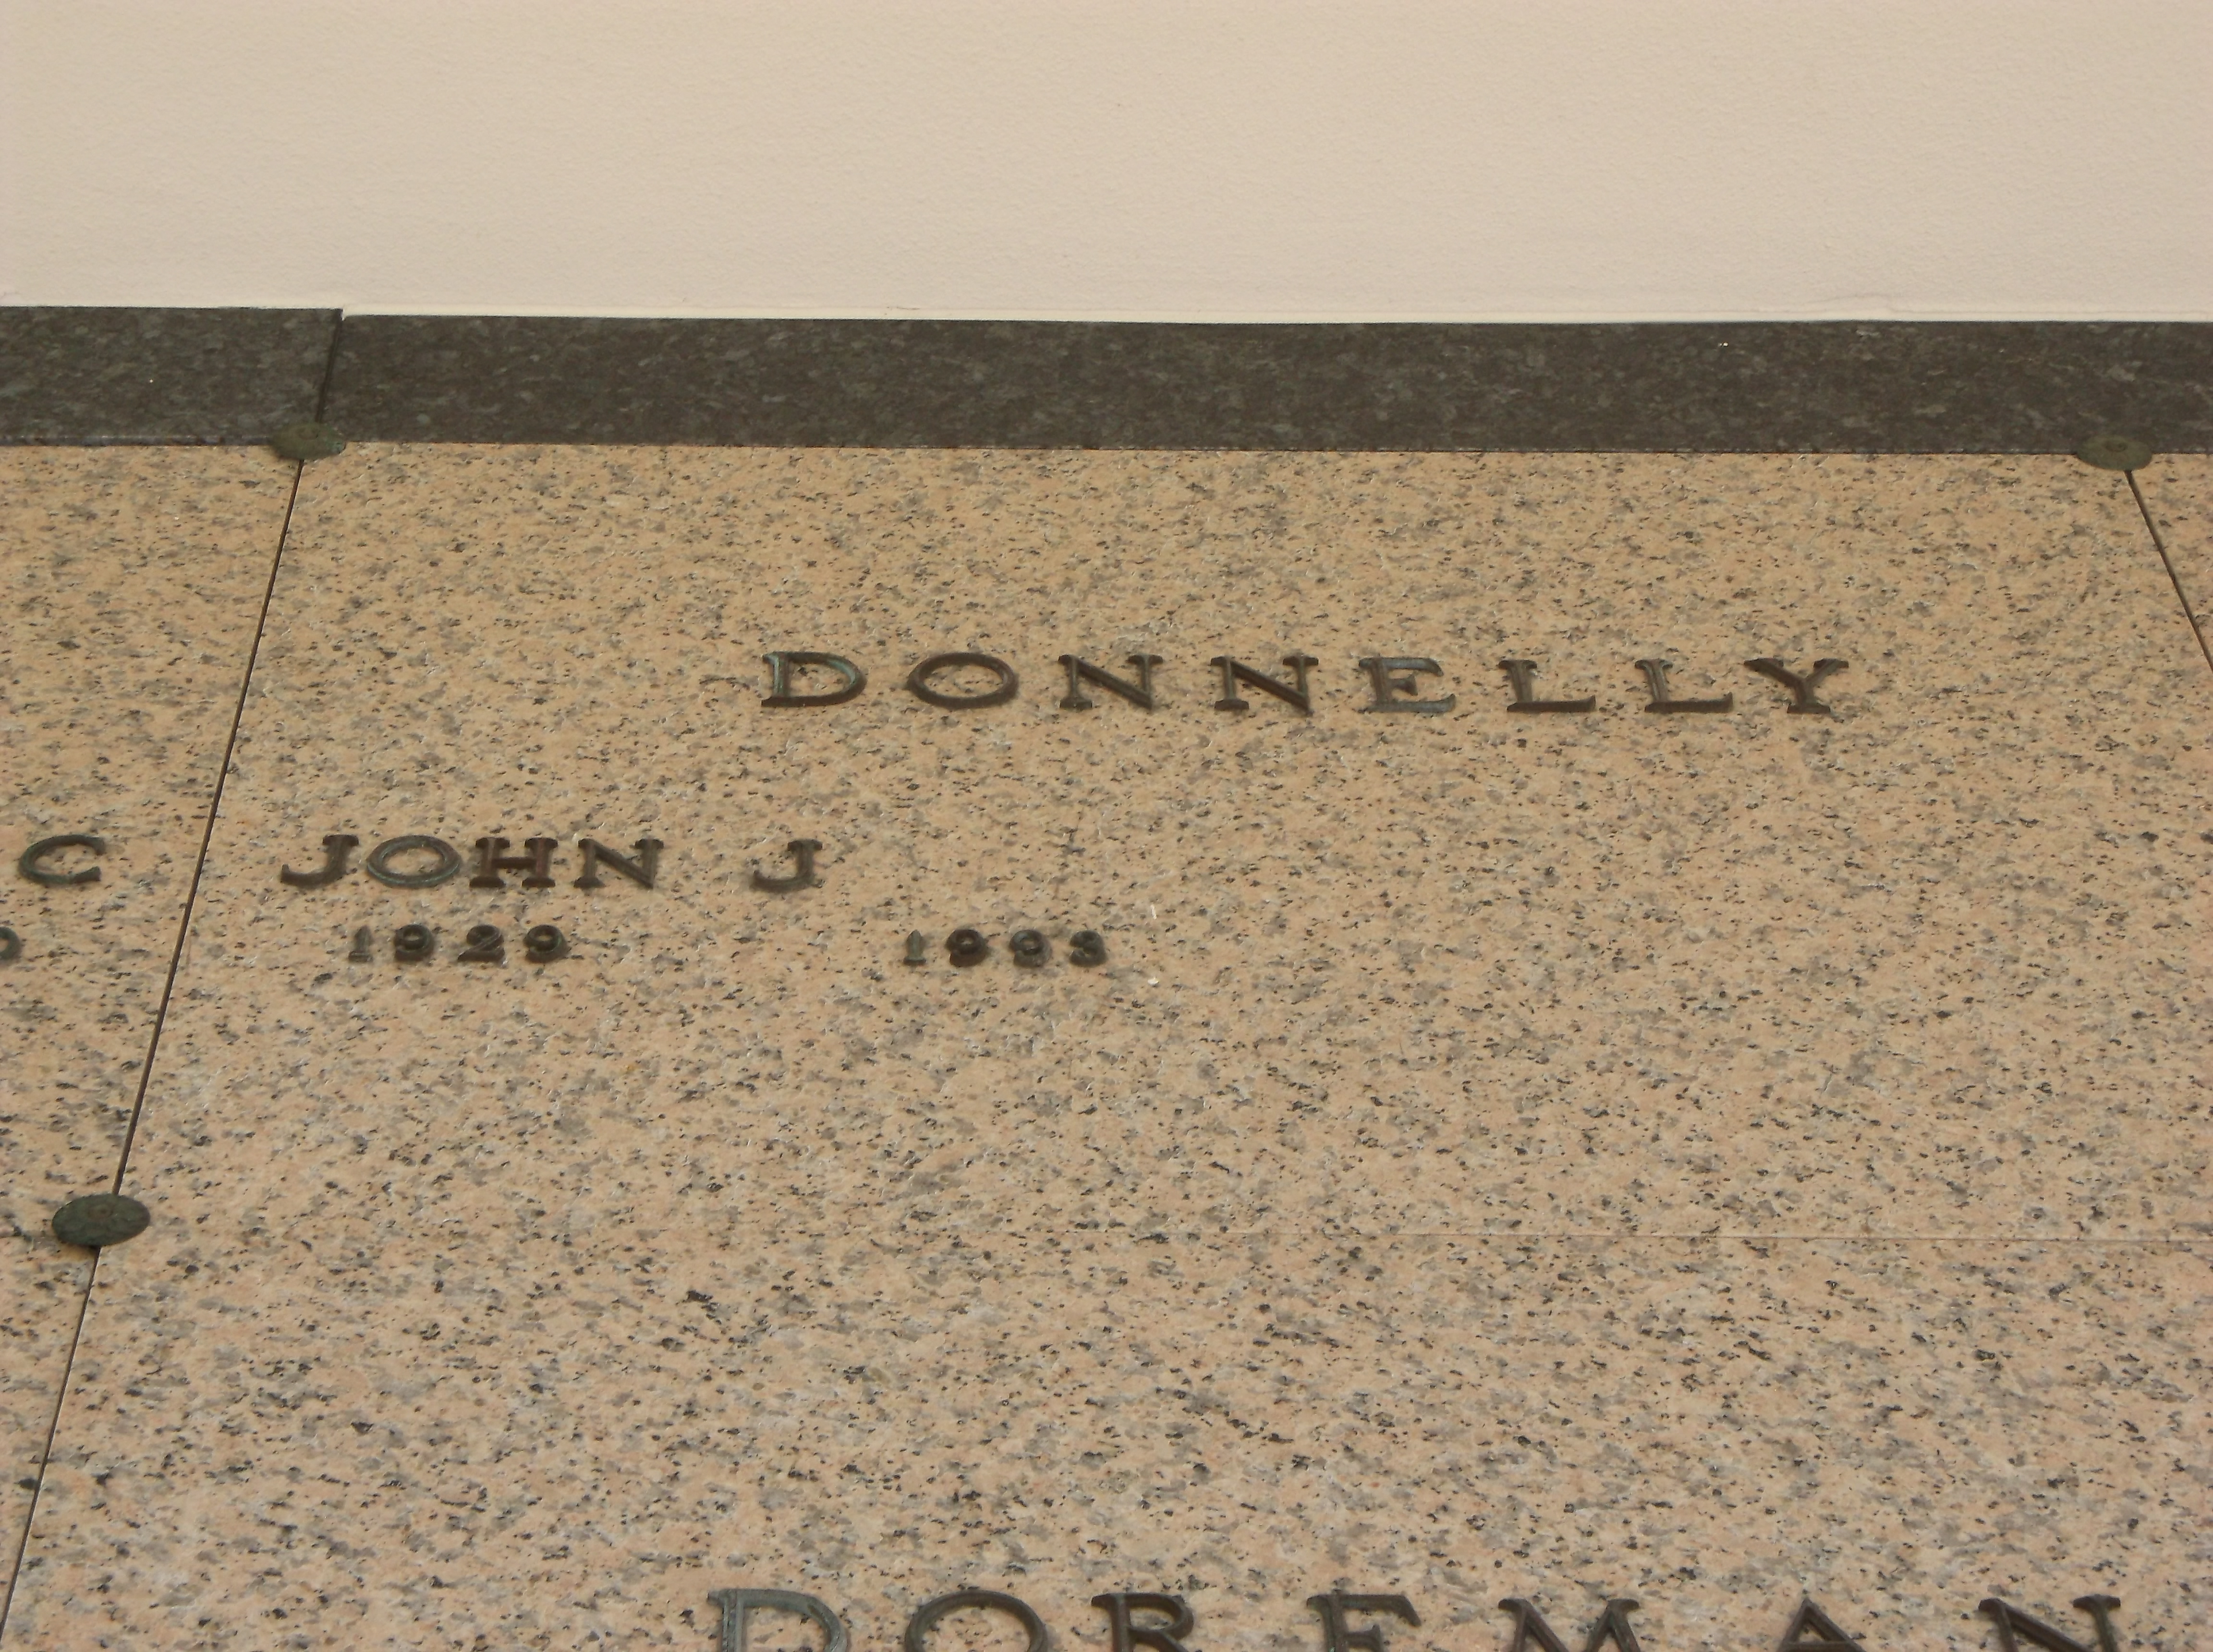 John J Donnelly